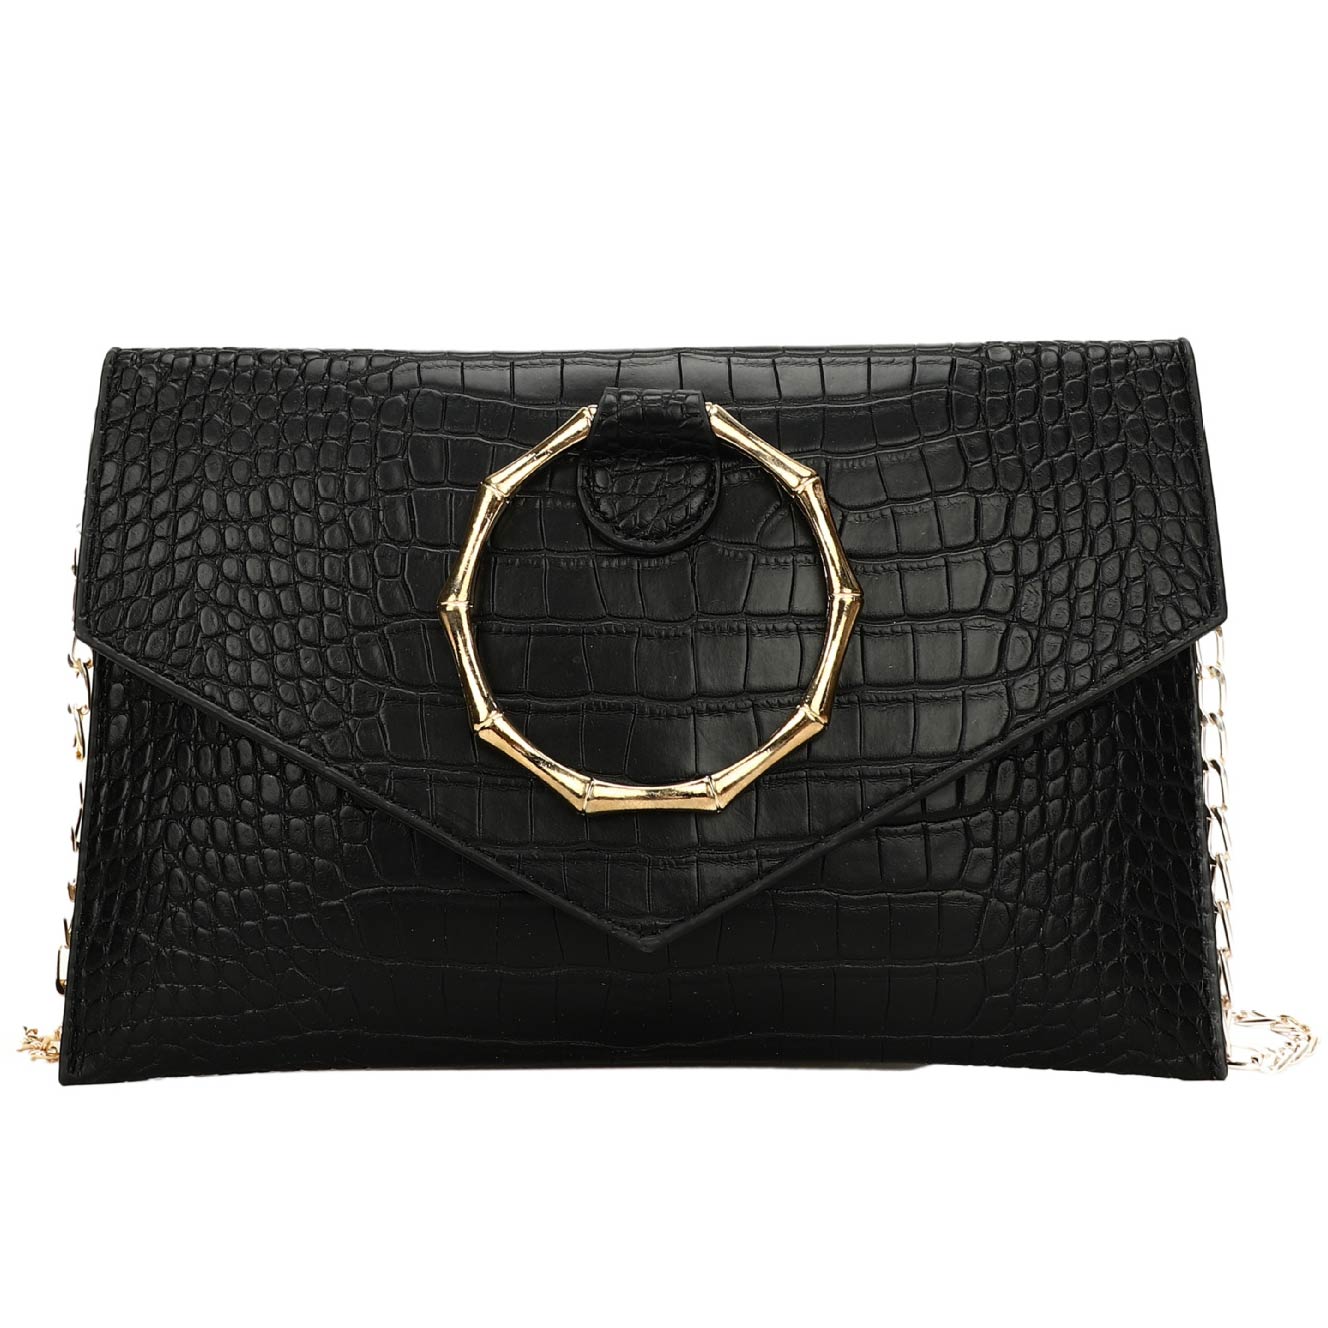 Black Crocodile Pattern Chains Magnetic Shoulder Bag